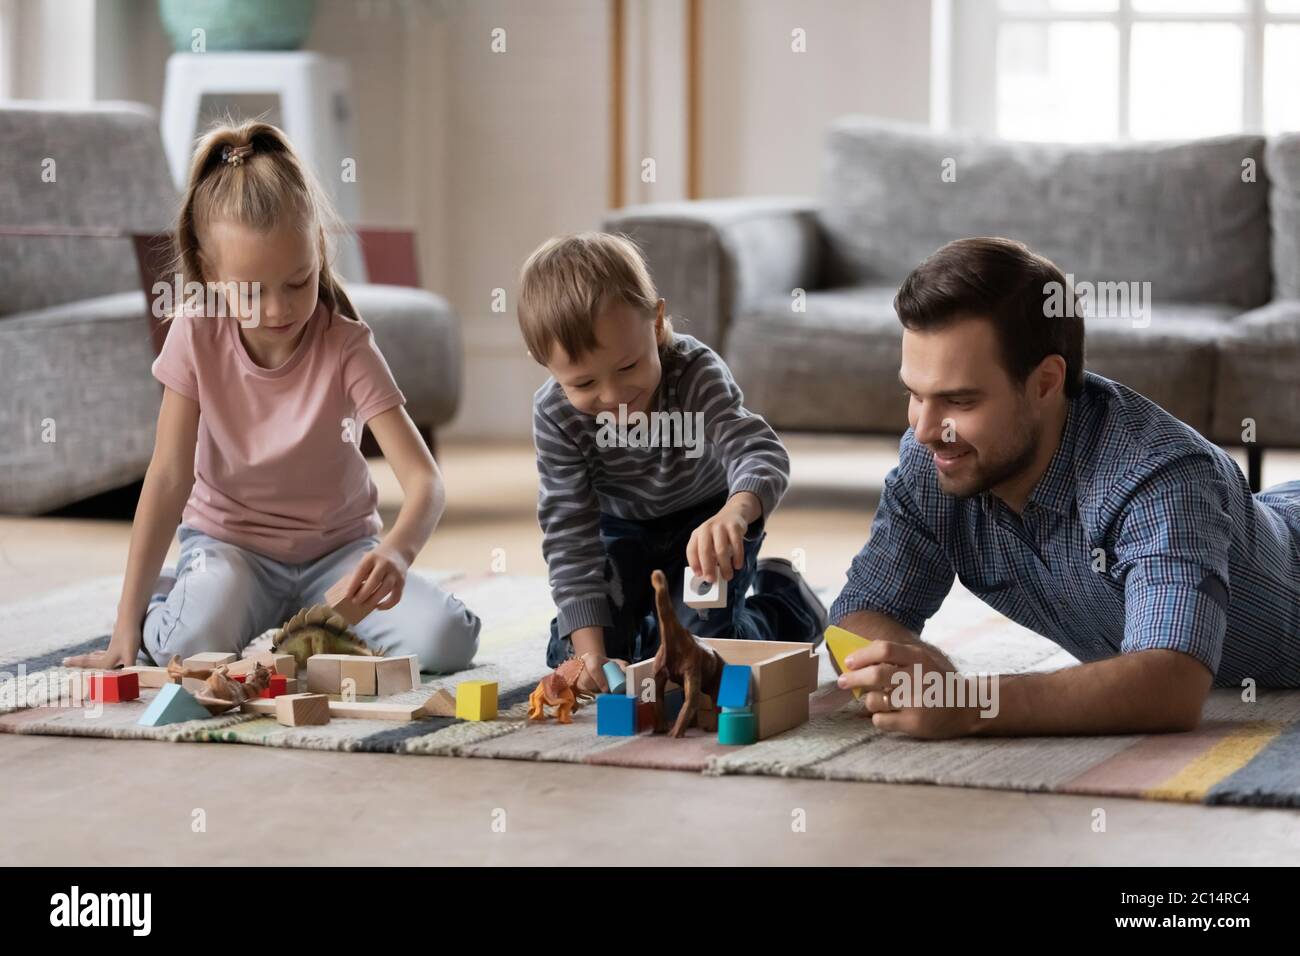 Père avec des enfants adorables jouant avec des jouets sur un sol chaud Banque D'Images